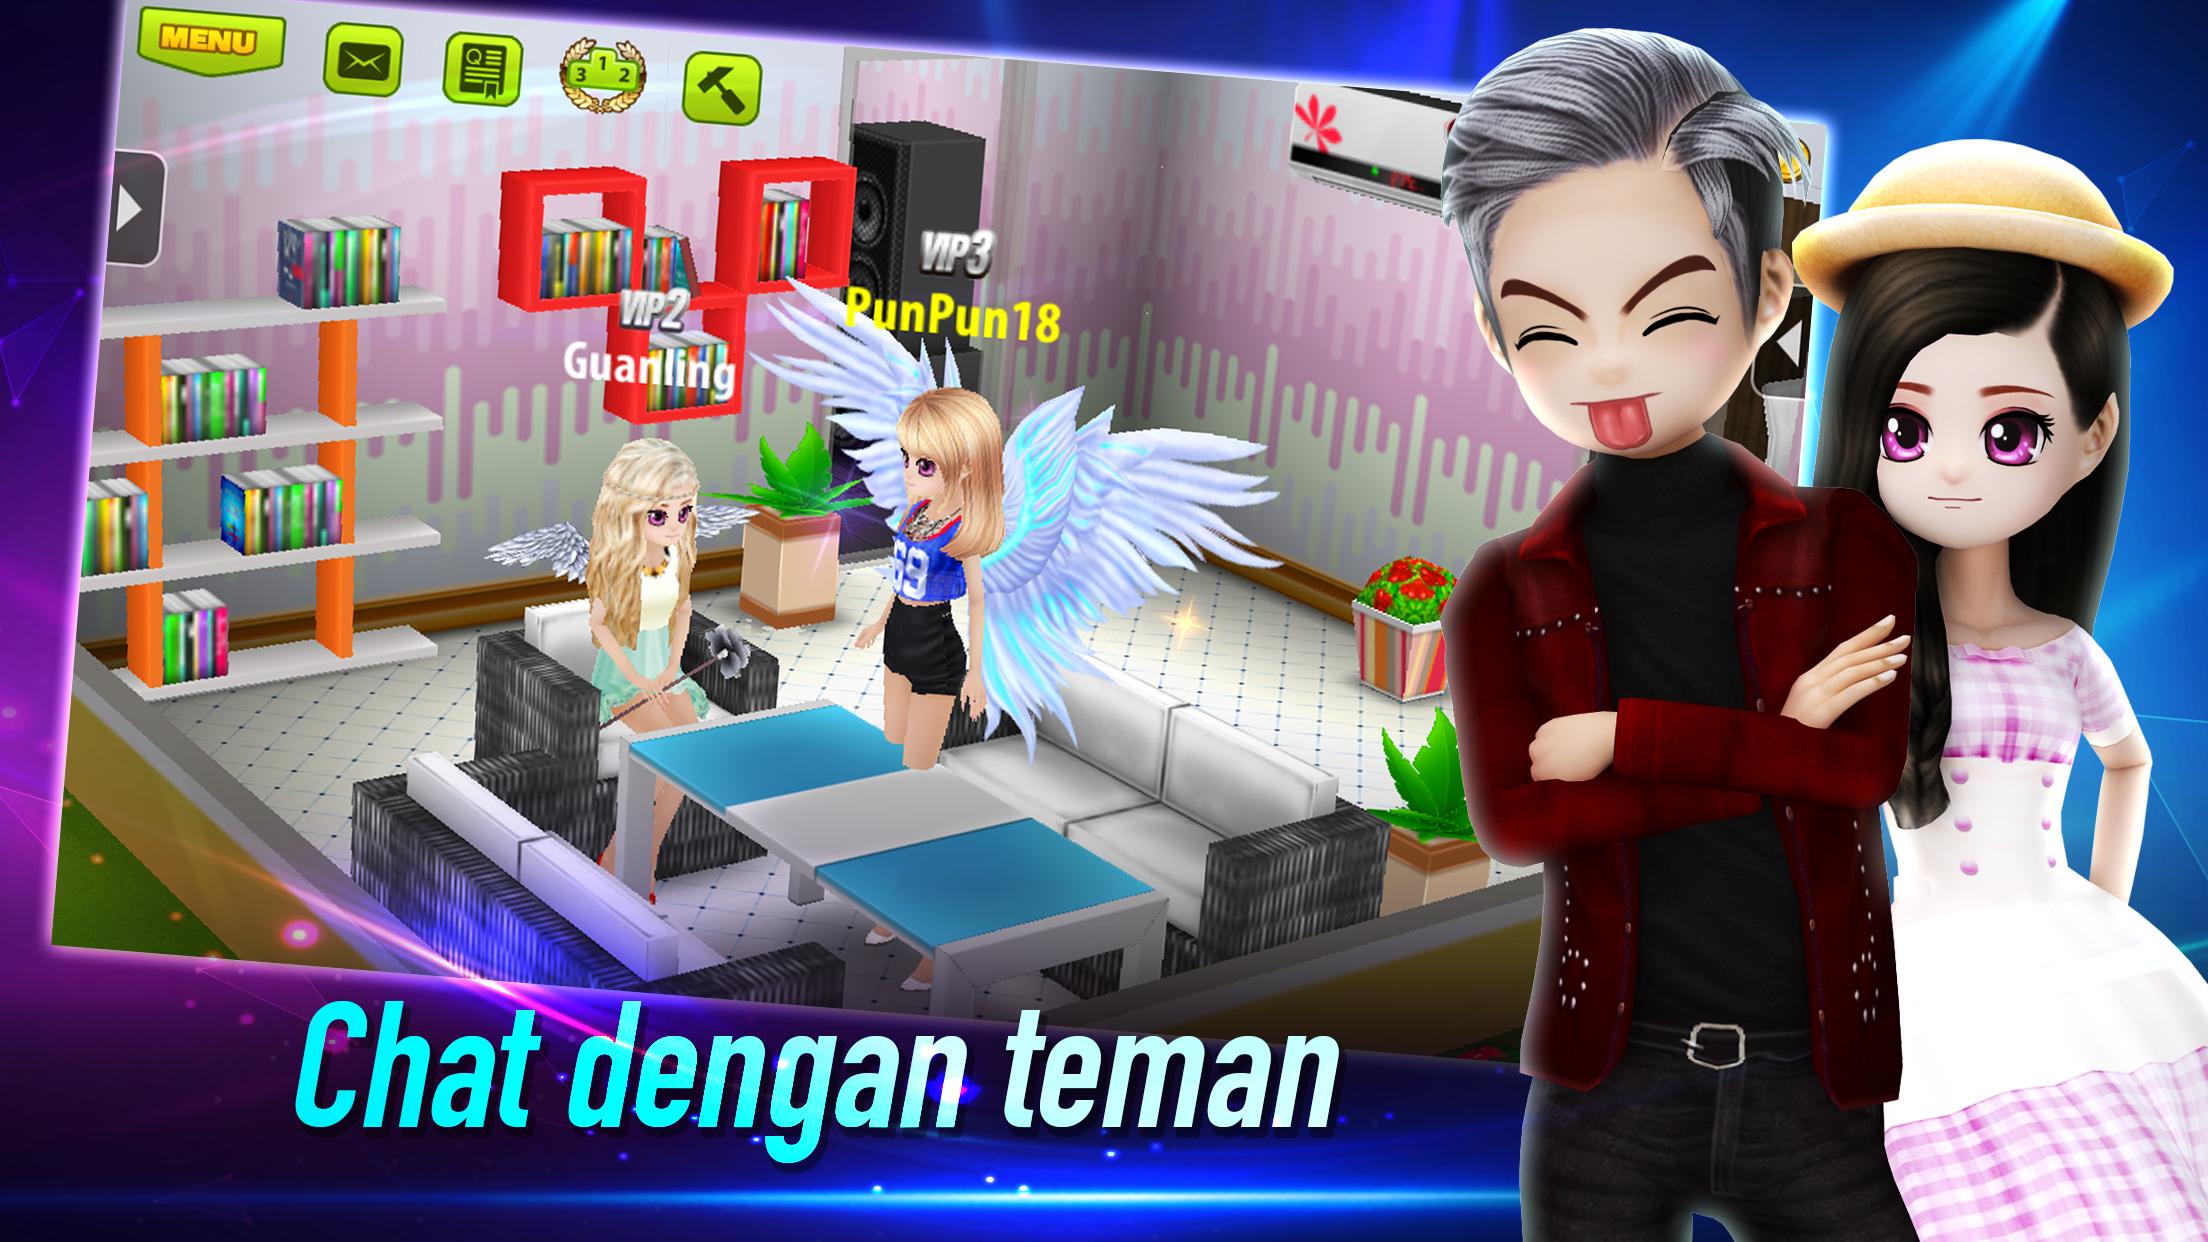 AVATAR MUSIK INDONESIA - Social Dancing Game 1.0.1 Screenshot 21